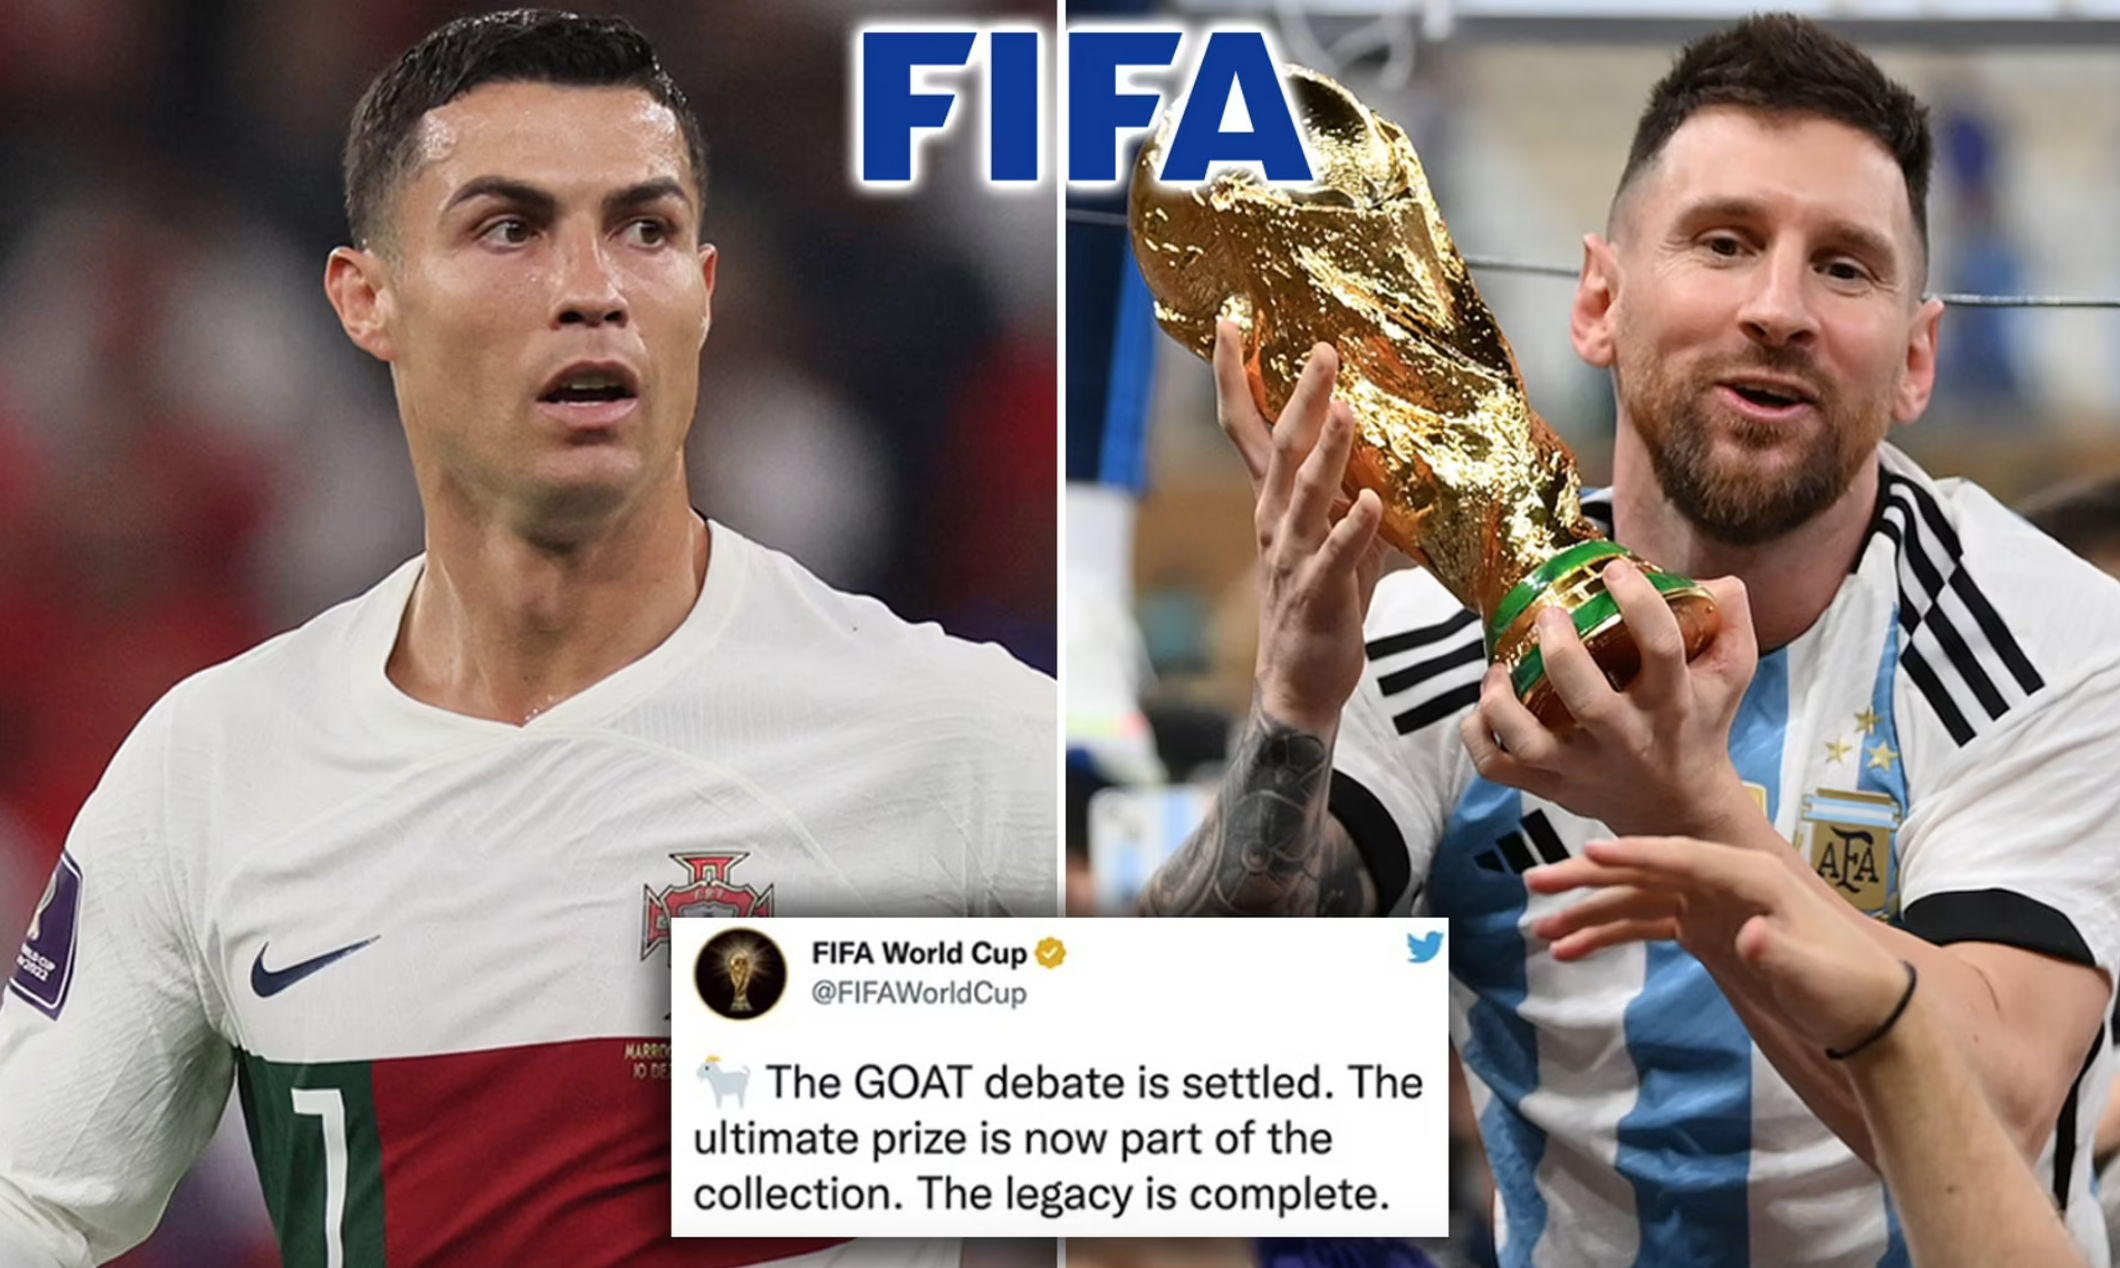 Đừng bỏ lỡ hình ảnh FIFA với các siêu sao bóng đá Messi và Ronaldo! Xem các pha bóng điêu luyện và những màn trình diễn xuất sắc của hai ngôi sao này trên sân cỏ.